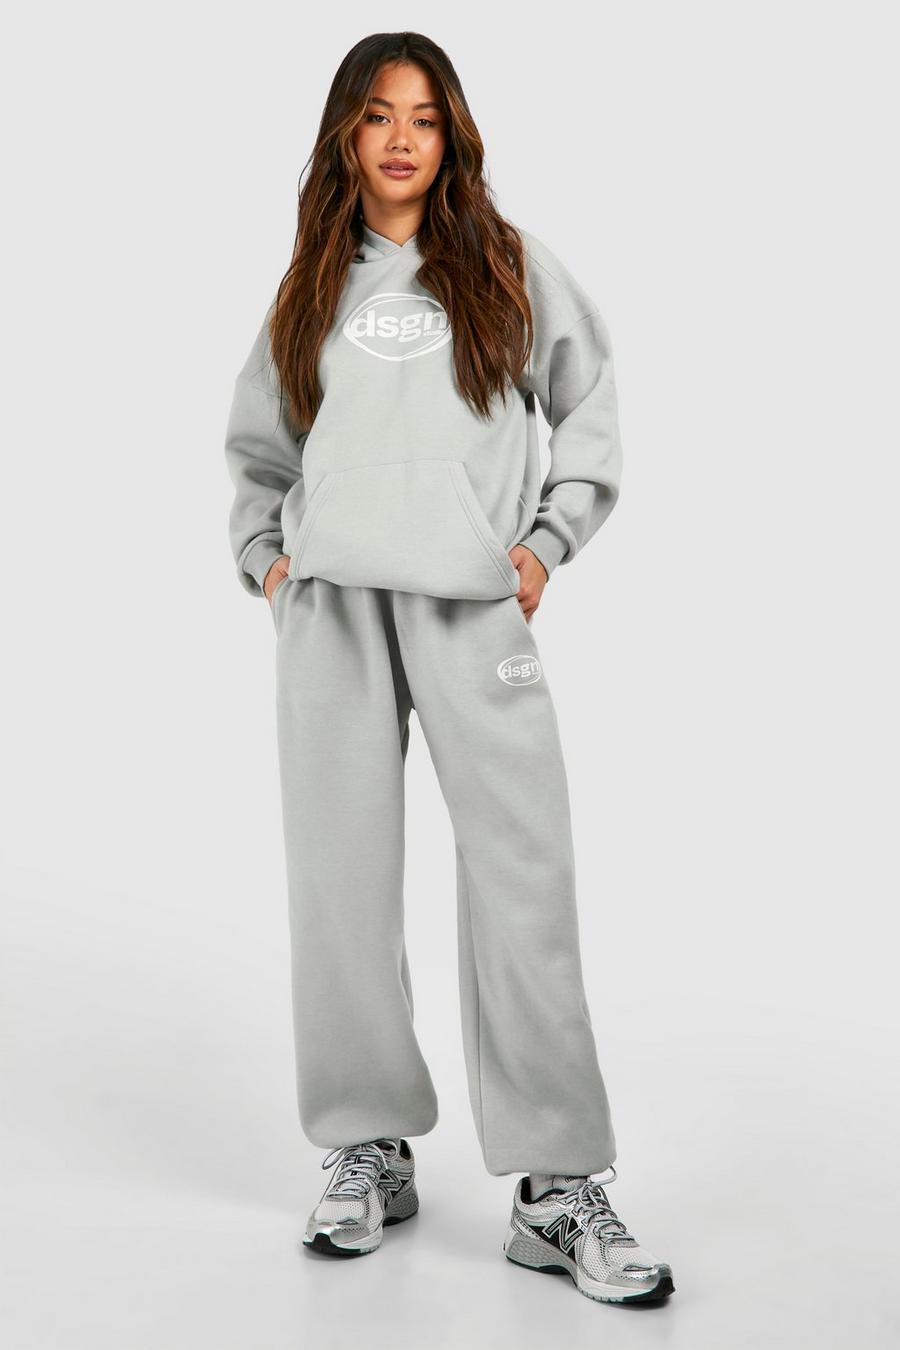 Pantalón deportivo oversize con botamanga y estampado Dsgn Studio, Ice grey